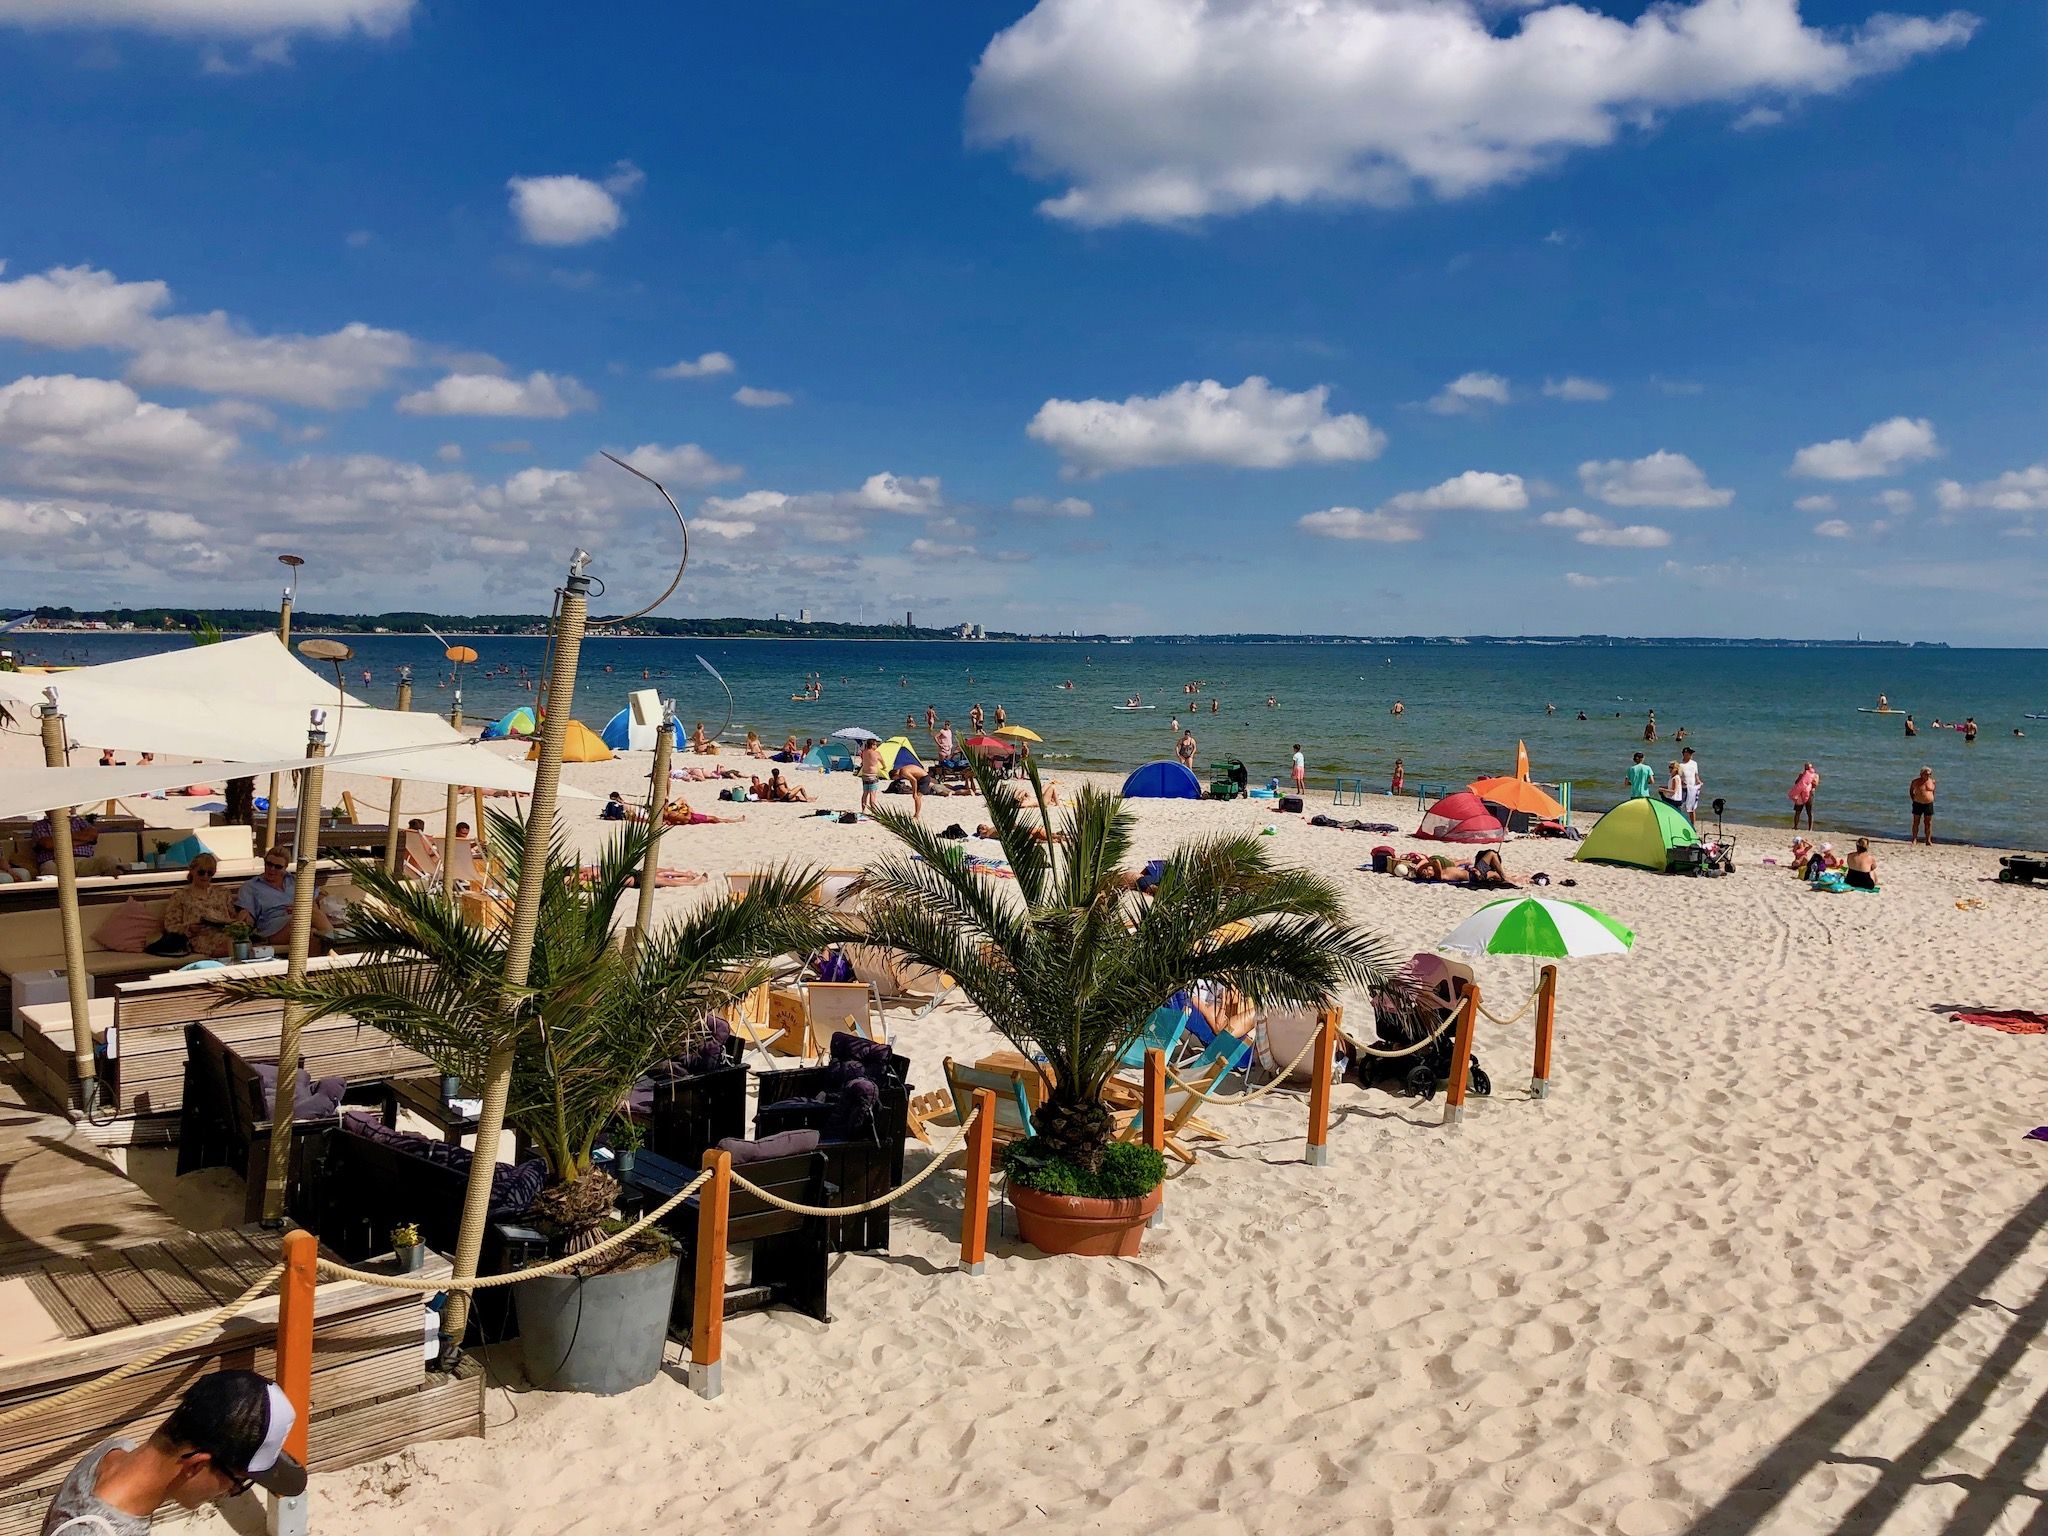 Reisebericht Scharbeutz – Tipps & Erfahrungen für den Urlaub am Meer